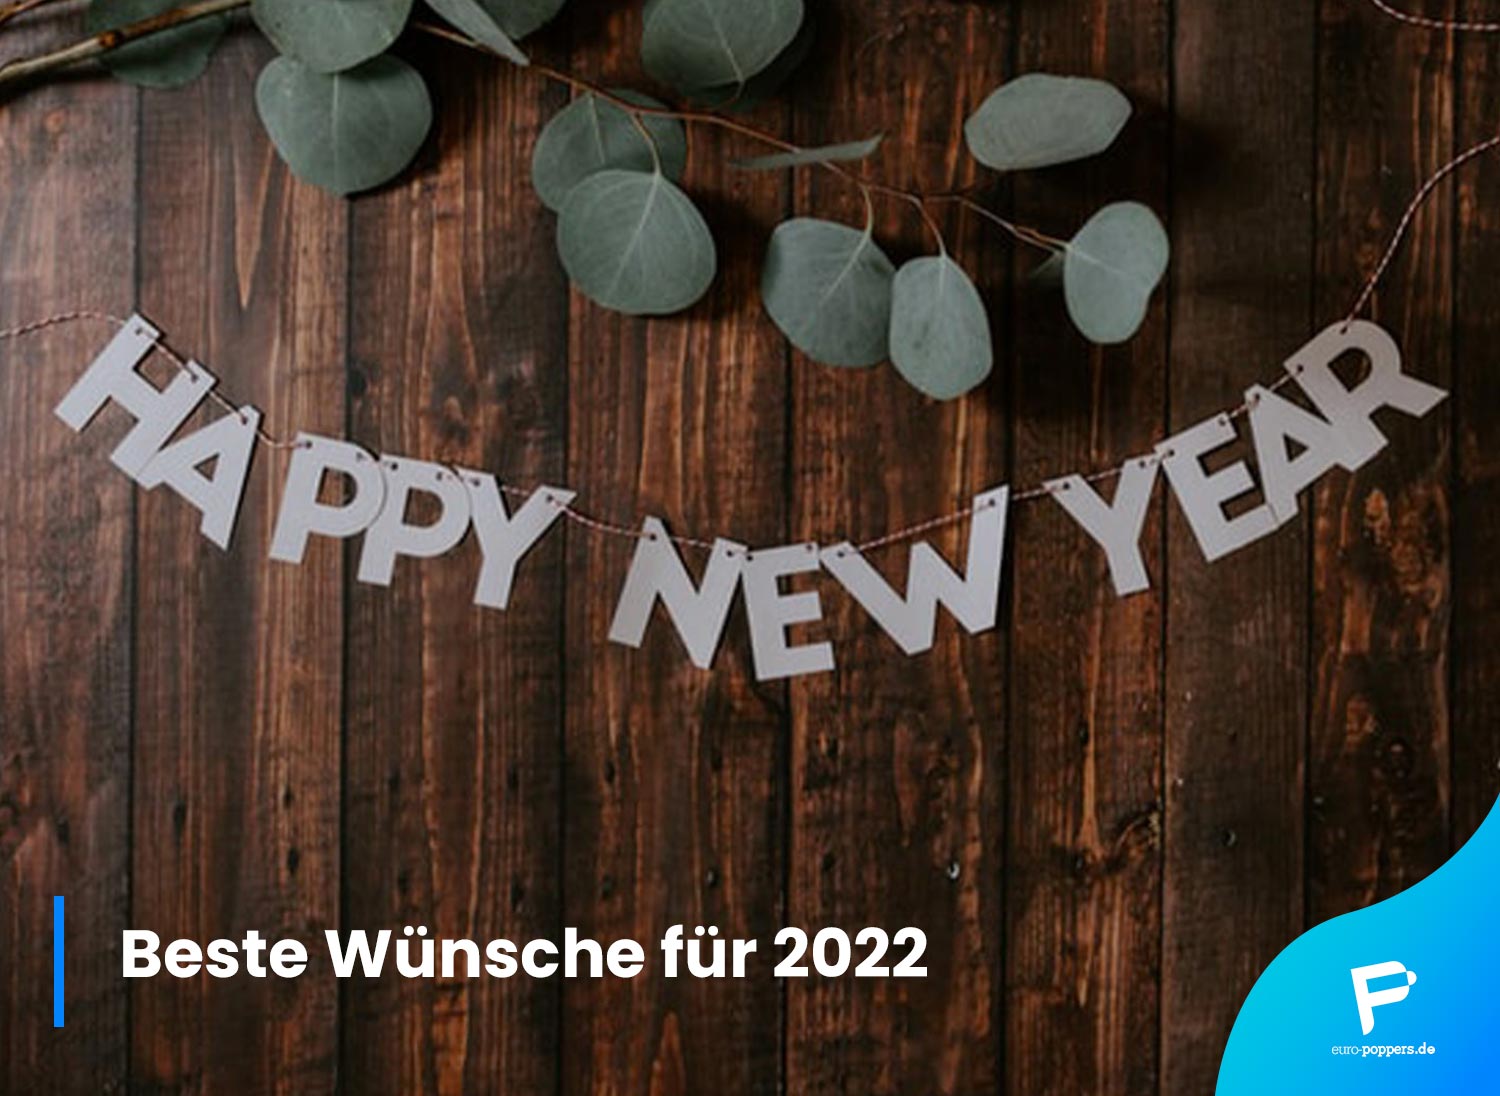 You are currently viewing Beste Wünsche für 2022